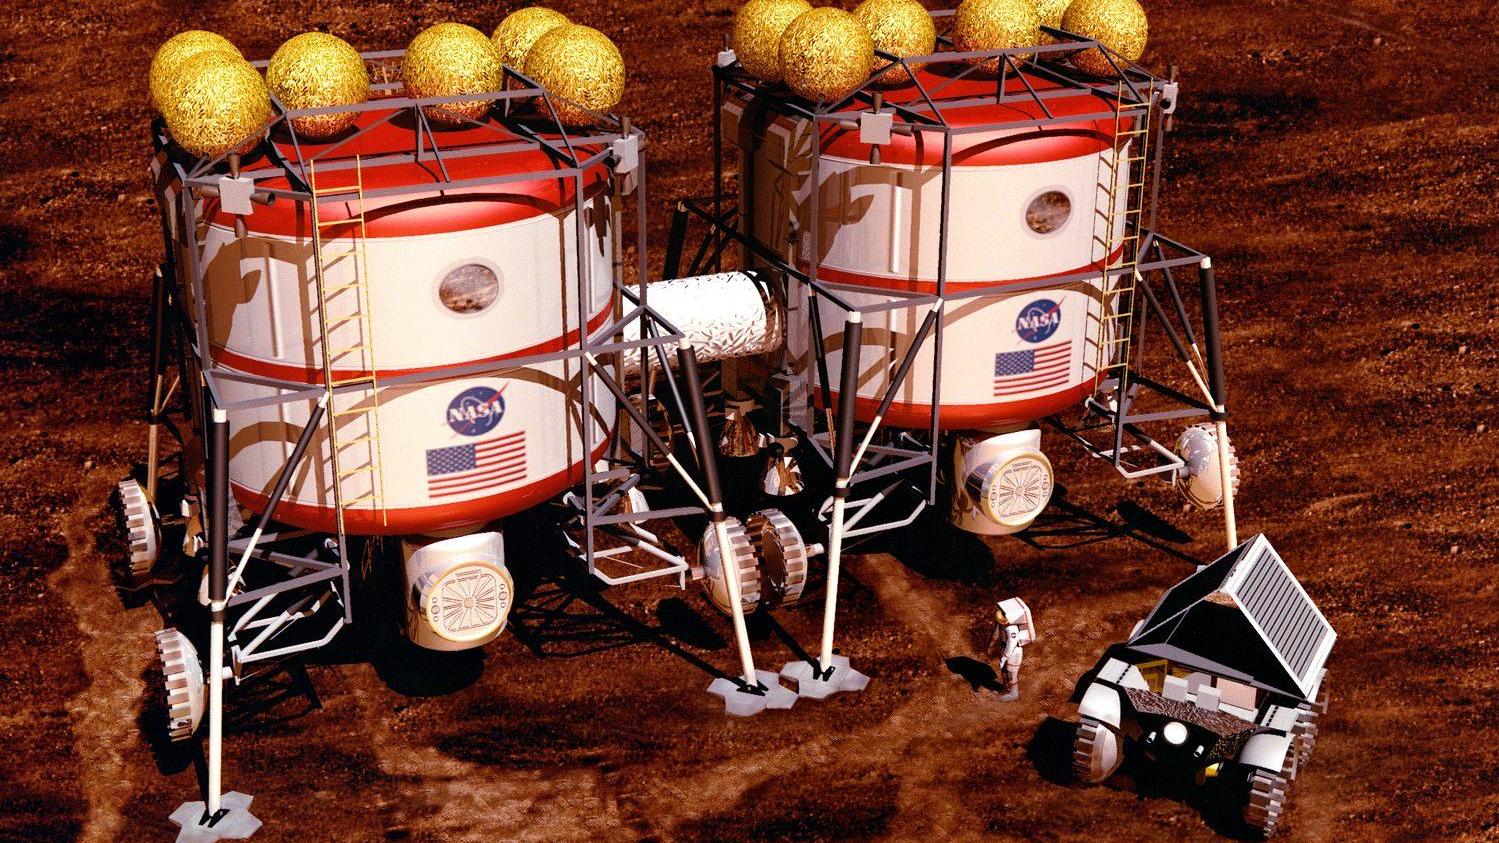 利用火星的空气、泥土和阳光，科学家将在火星上“炼”铁